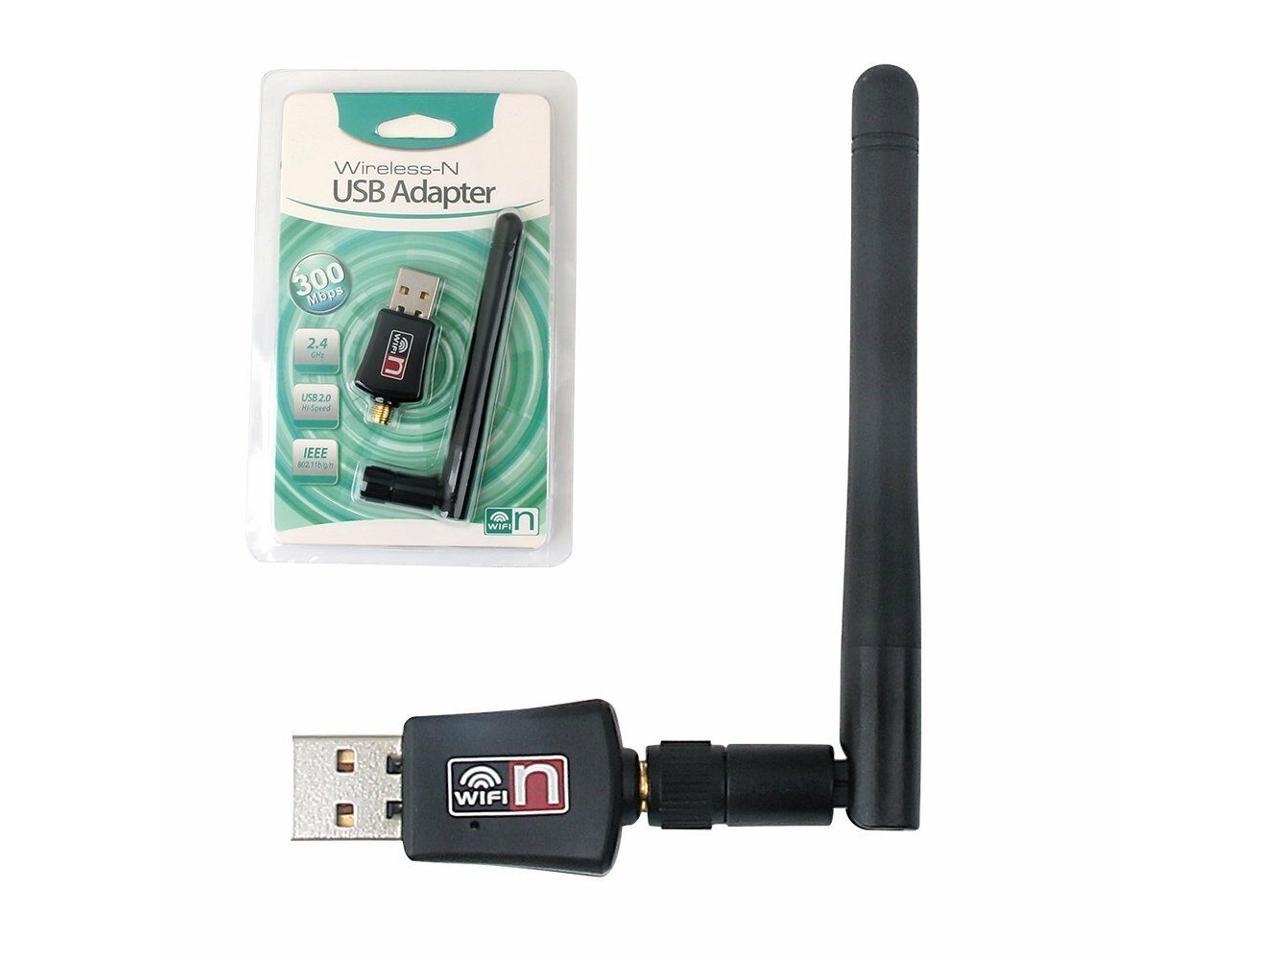 Драйвера для usb 2.0 wireless 802.11 n. USB WIFI адаптер 11n. Wi-Fi адаптер USB 2.0. Wi Fi адаптер 802.11 n WLAN. Сетевой адаптер Realtek rtl8188eu Wireless lan 802.11n USB 2.0.